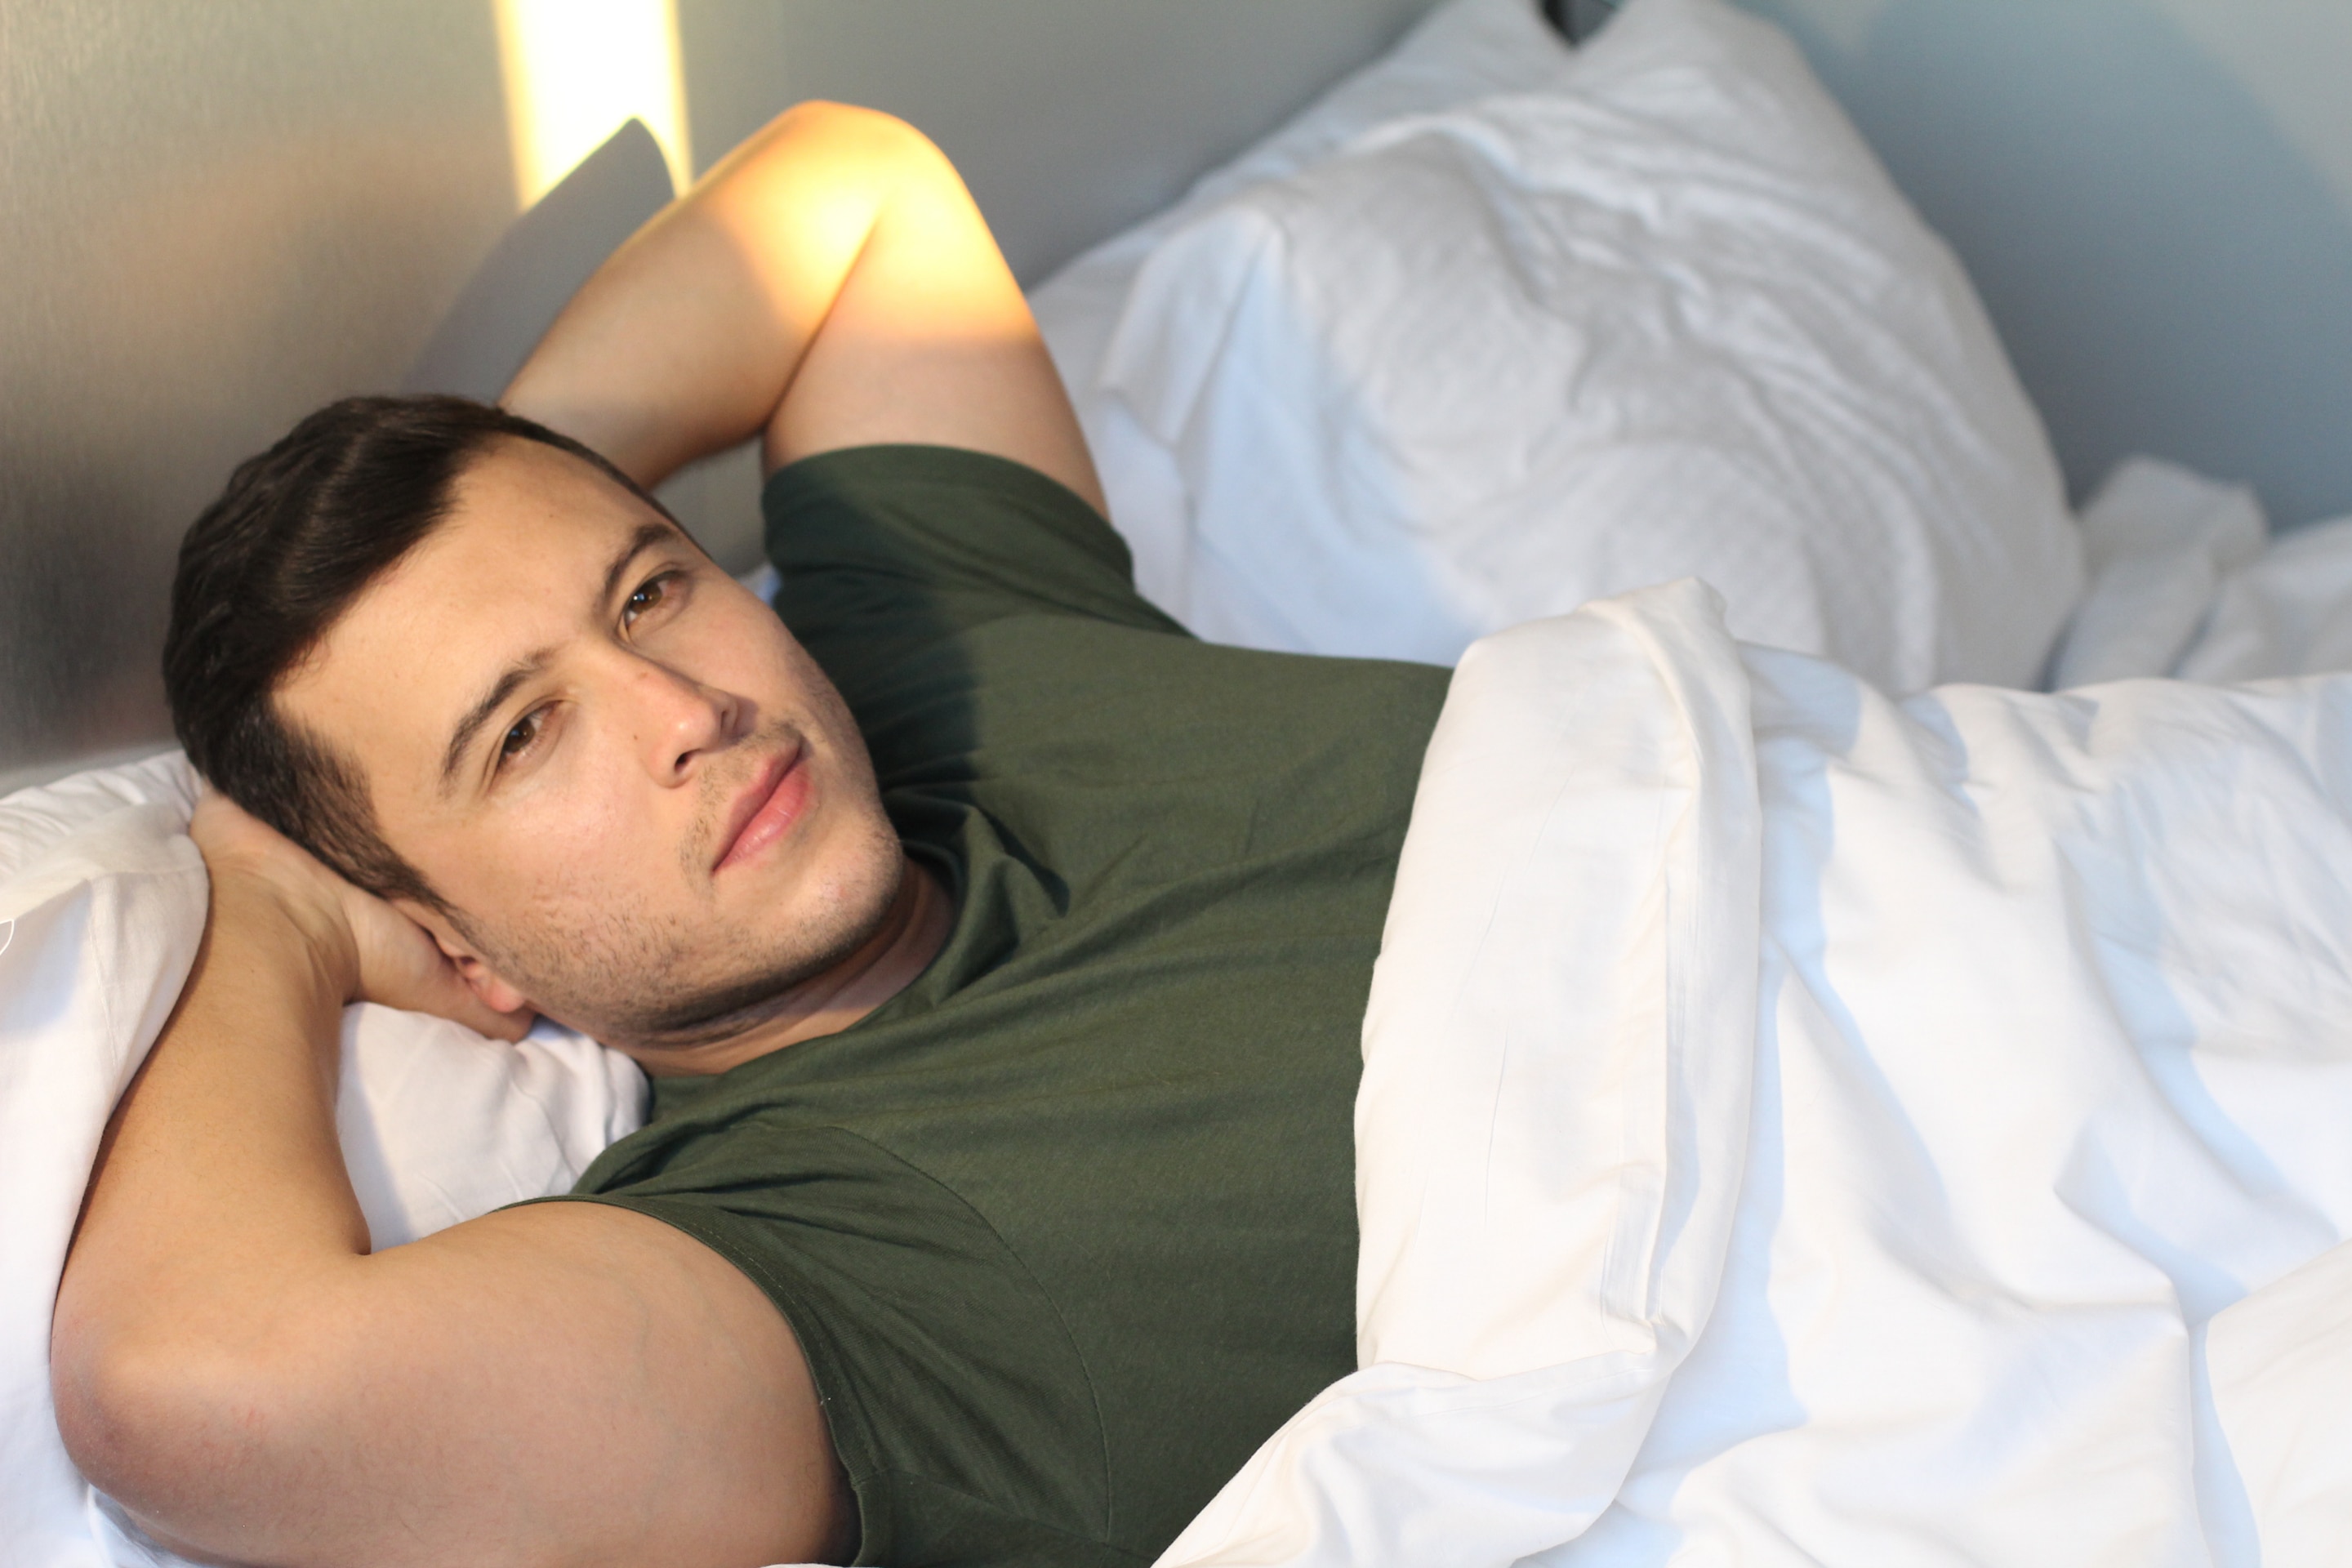 Астрахань расслабляющий для мужчин. Фото мужчин домашние дома в кровати крупным планом. Фото мужчин 30-40 в кровати домашние. Мужчина в возрасте на кровати домашнее. Improve Sleep quality.